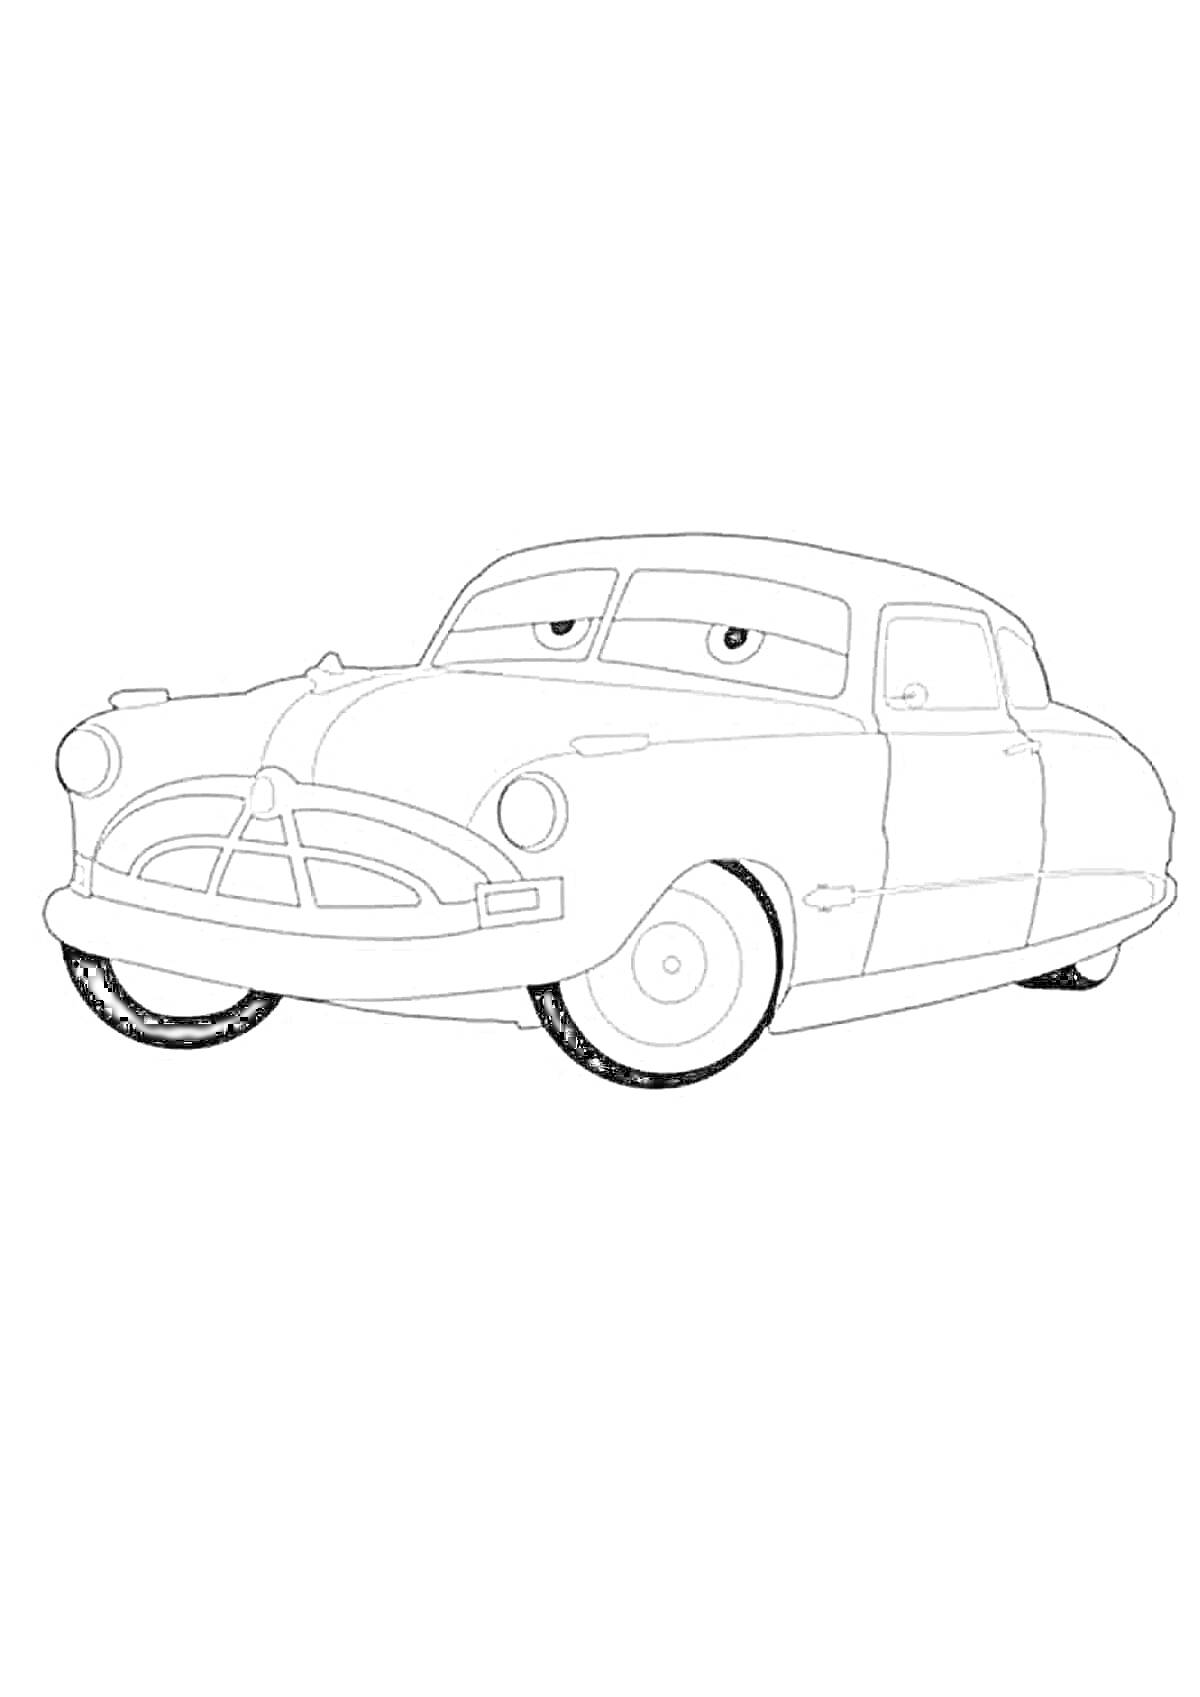 Раскраска Черно-белая раскраска автомобиля в форме шерифа из мультфильма